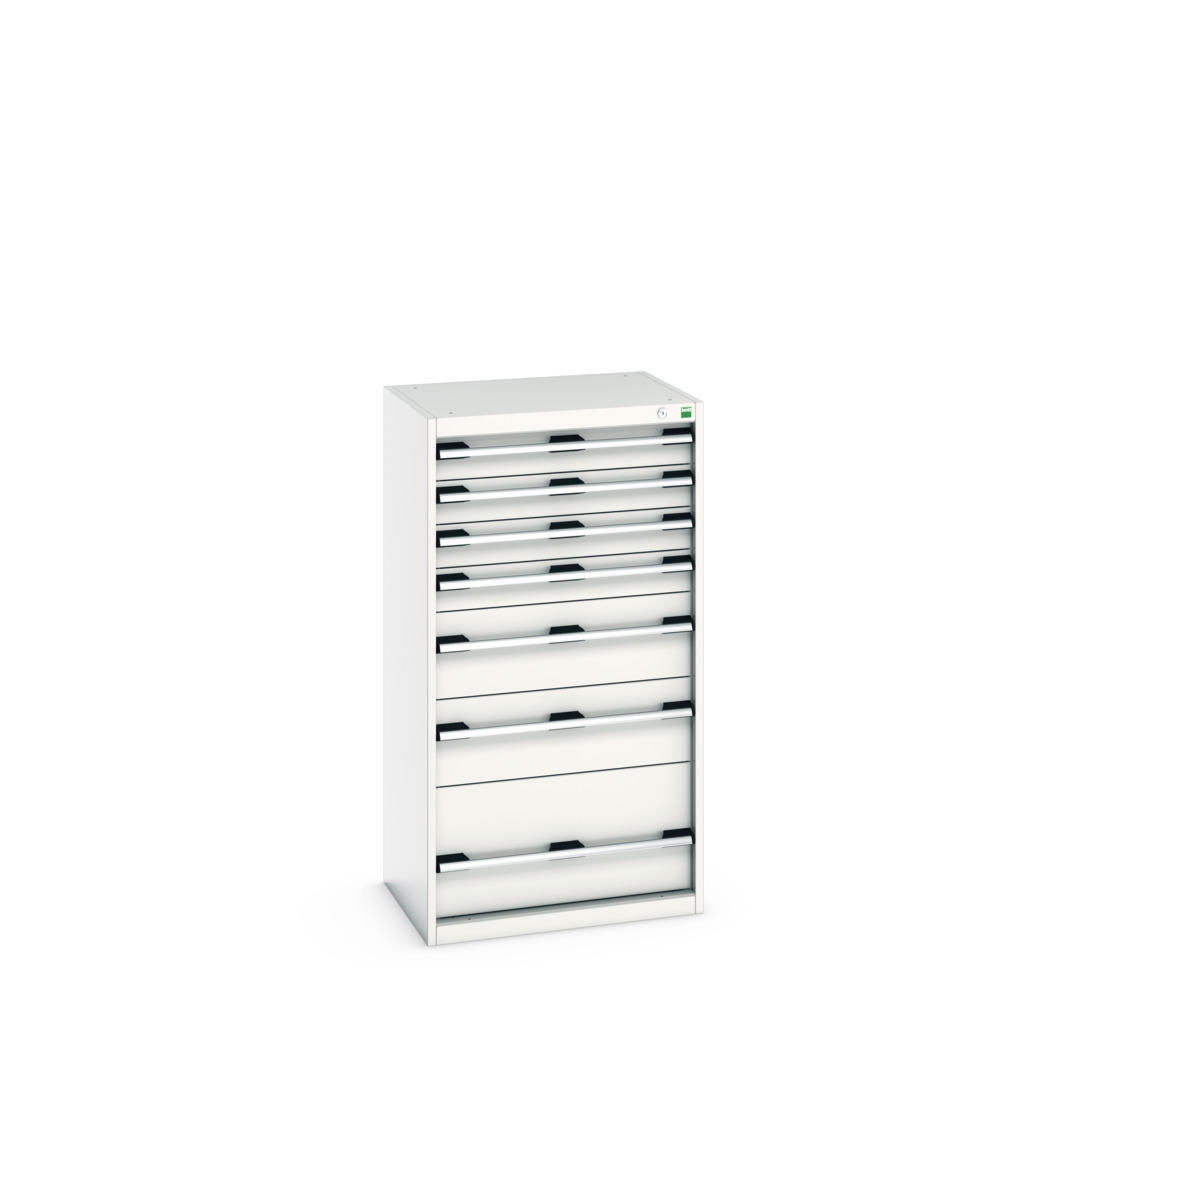 40011063.16V - cubio drawer cabinet